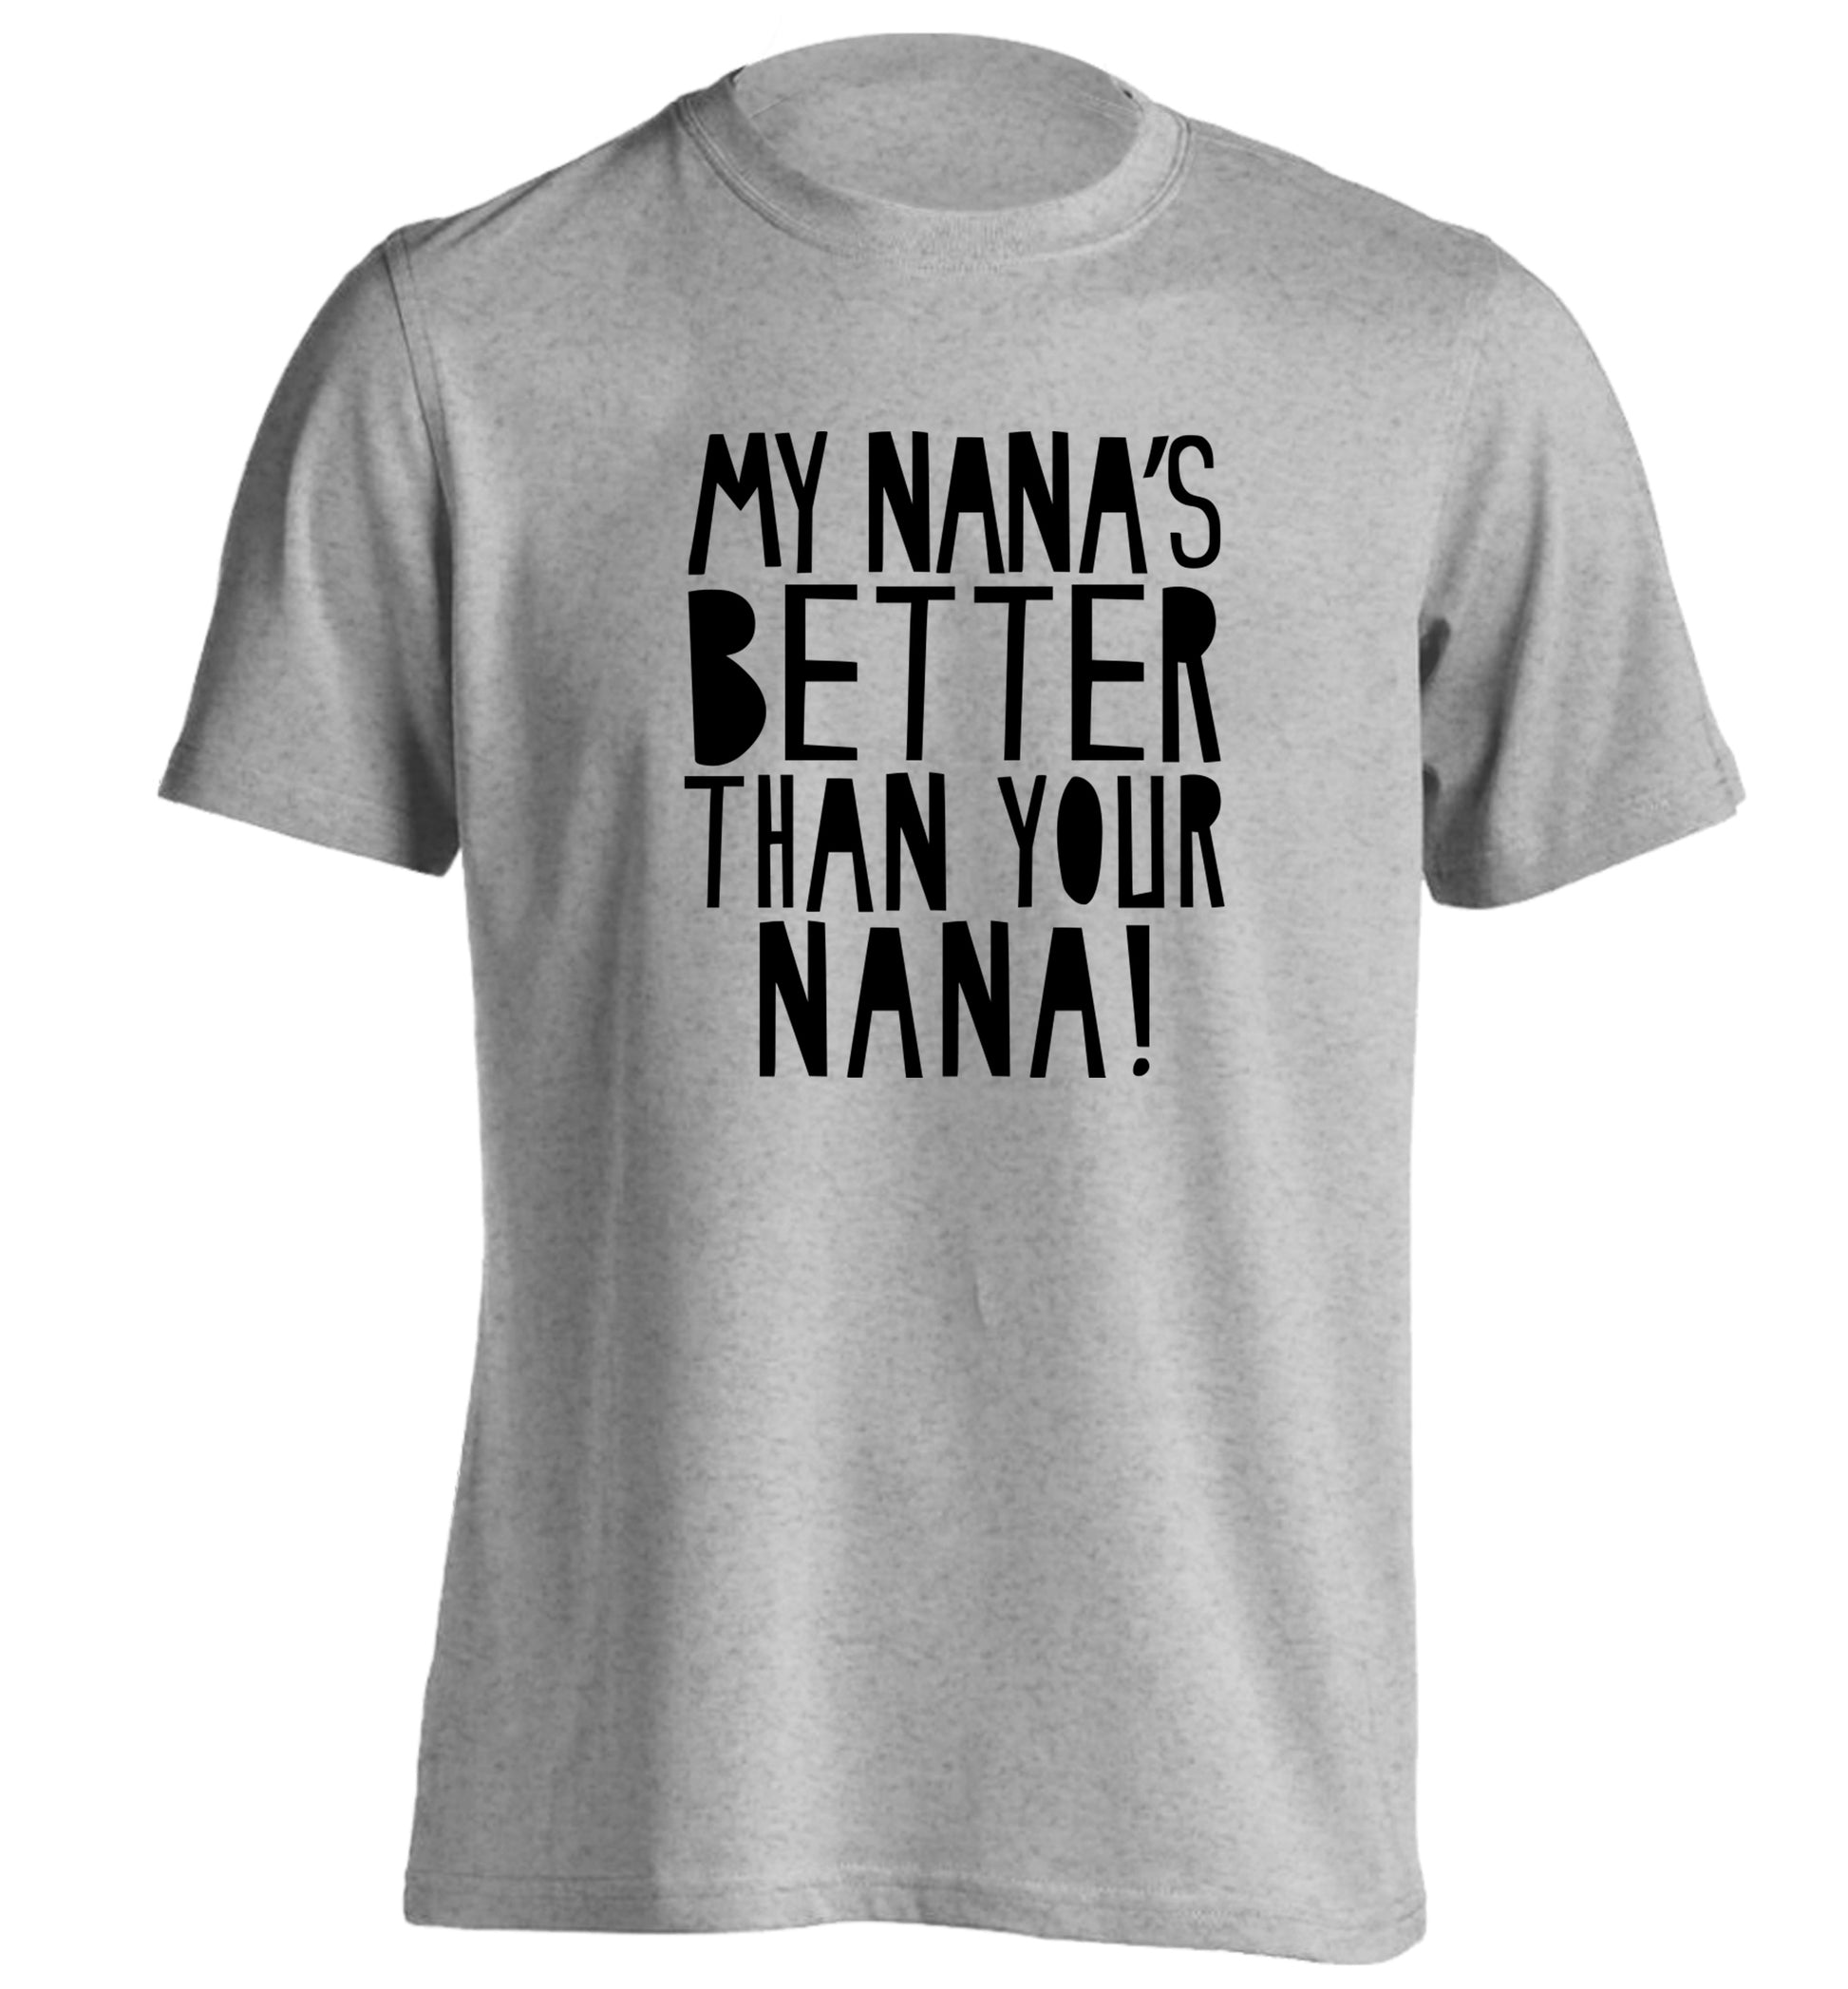 My nana's better than your nana adults unisex grey Tshirt 2XL